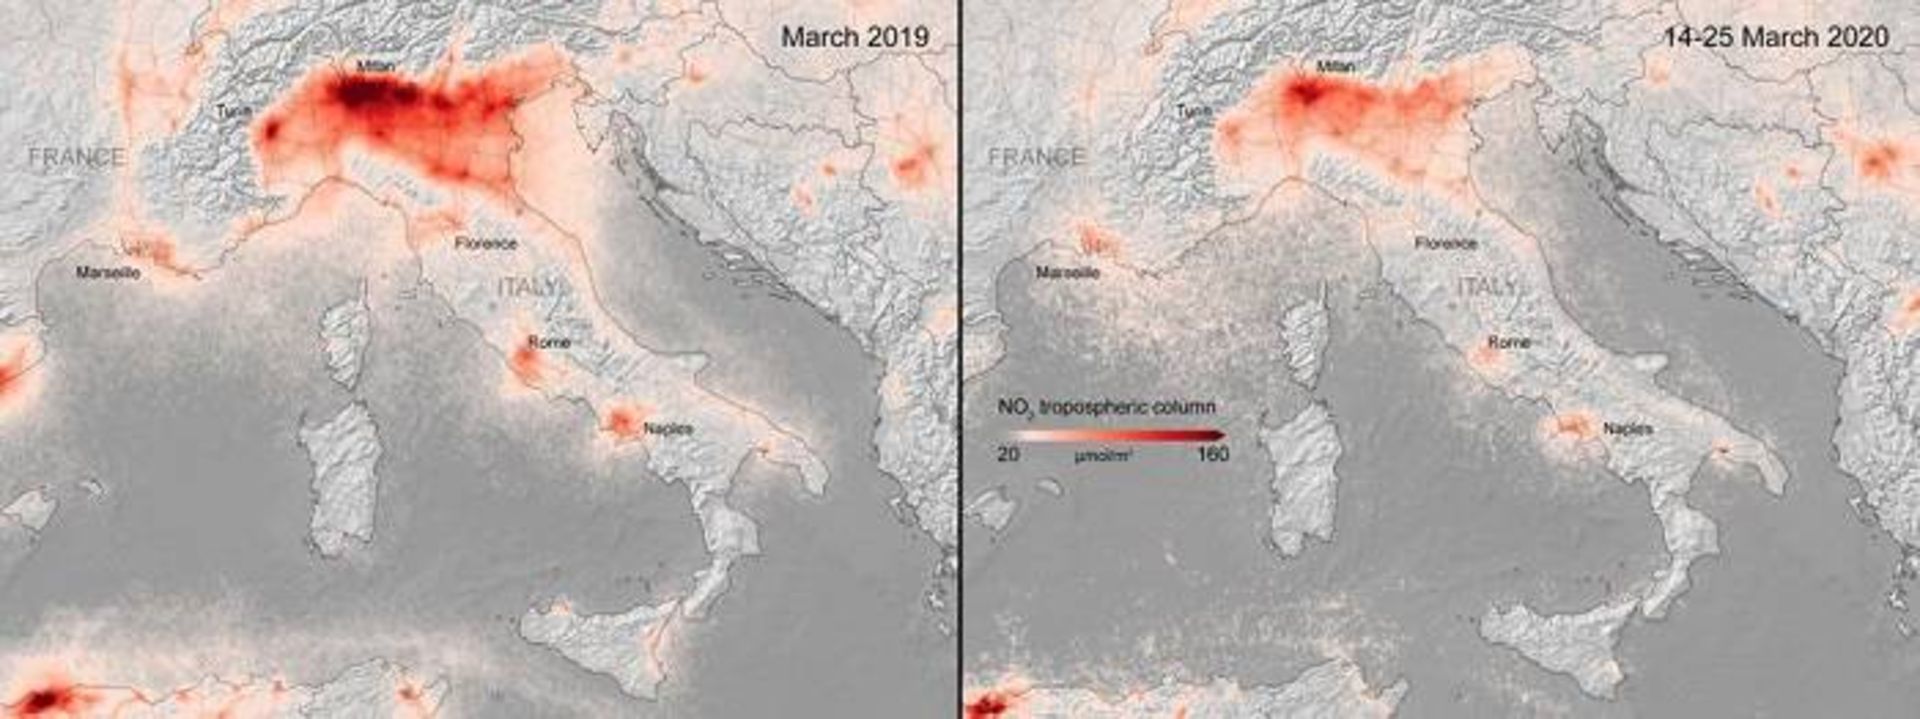 آلودگی هوا در اروپا در جریان کرونا